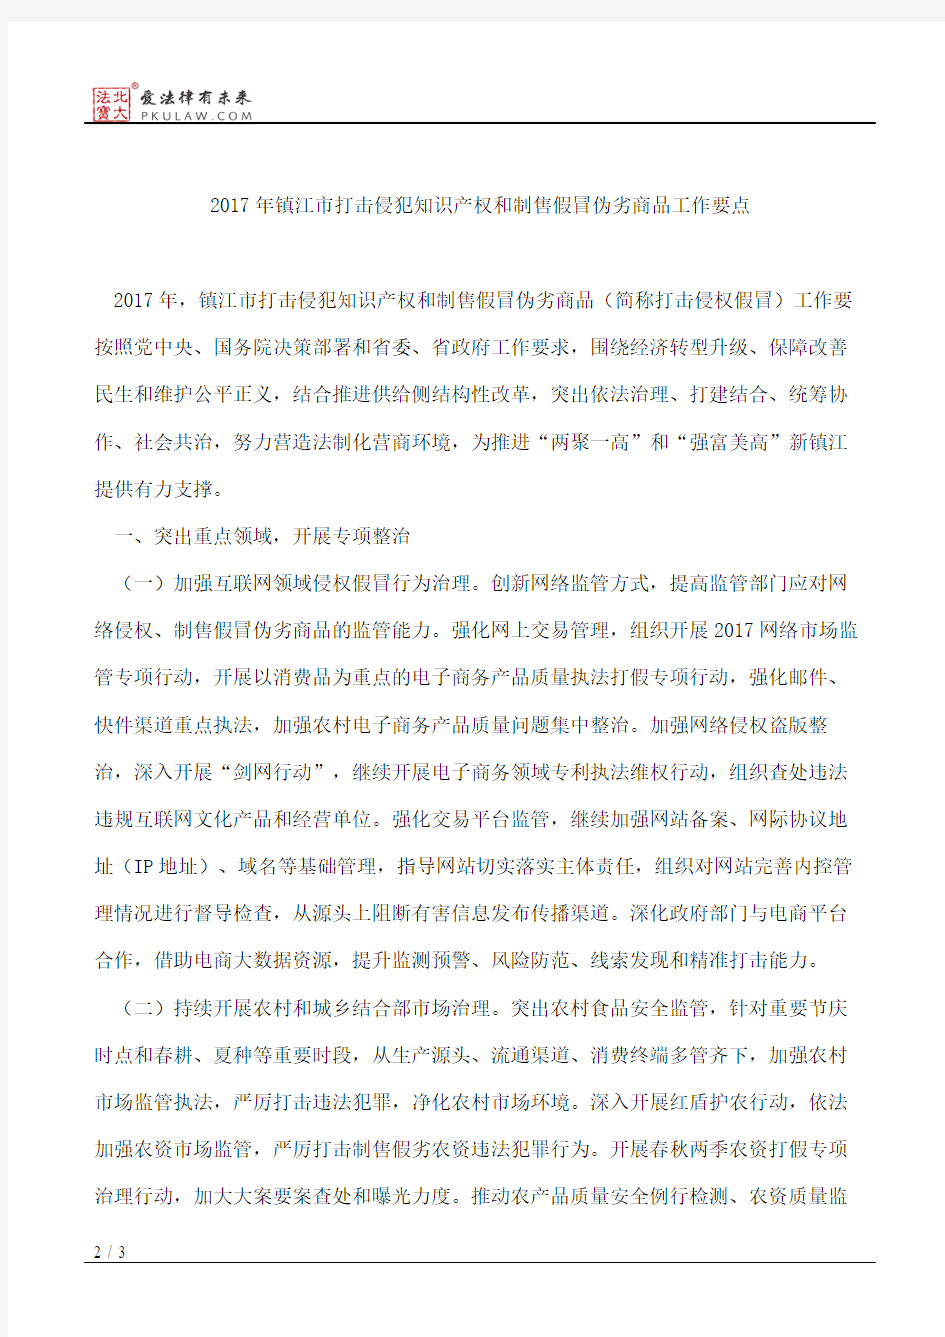 镇江市人民政府办公室关于印发2017年镇江市打击侵犯知识产权和制